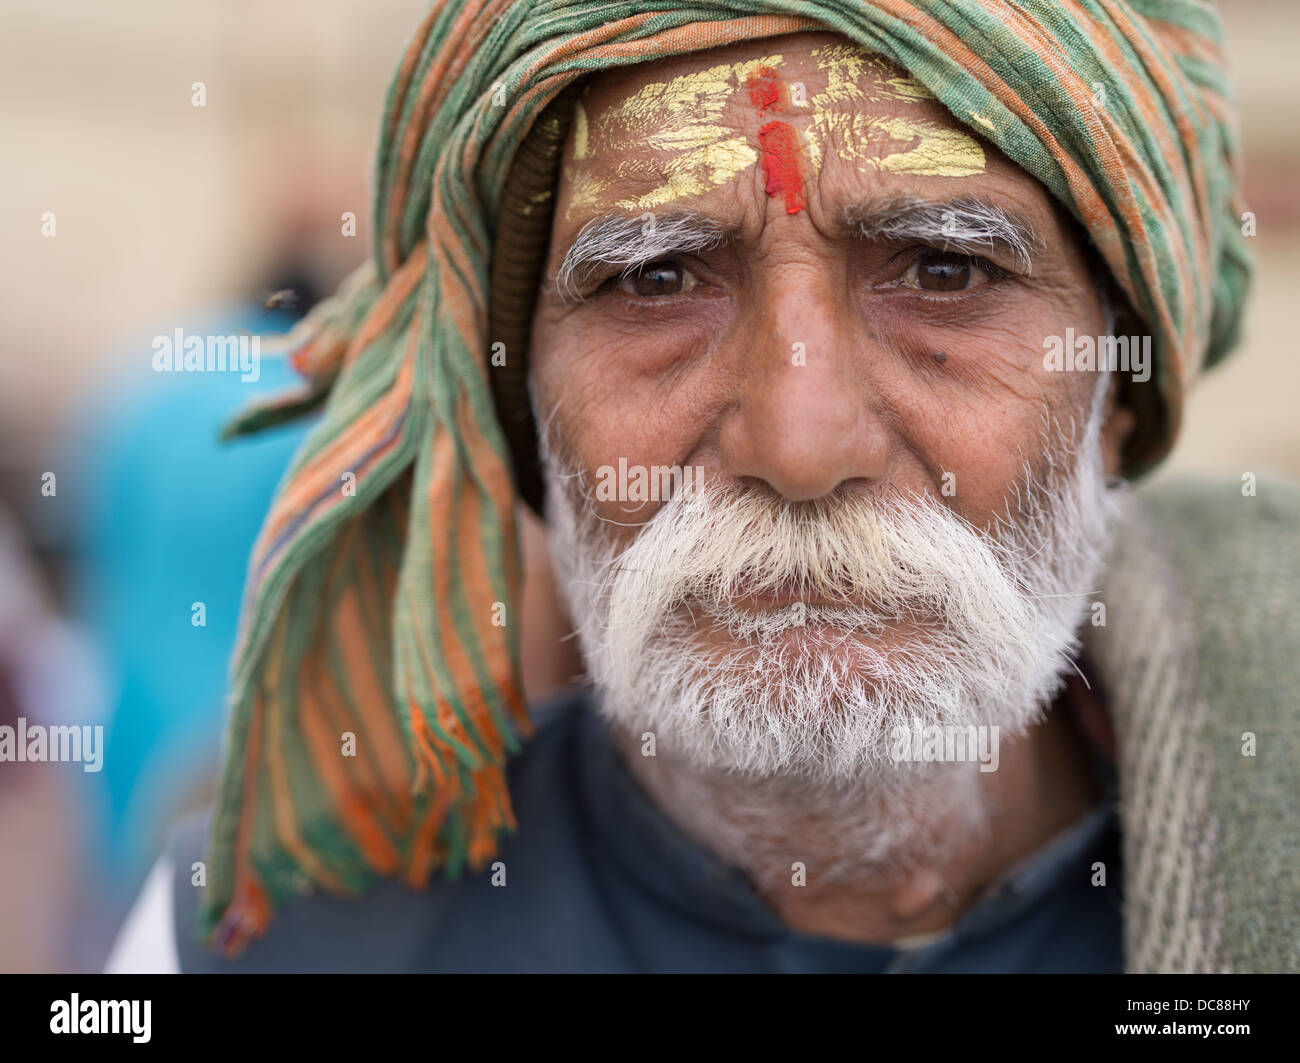 Porträt von Saivite Pilger zum Fluss Ganges (Varanasi) für Kumbh Mela im März 2013 gewandert war. Stockfoto